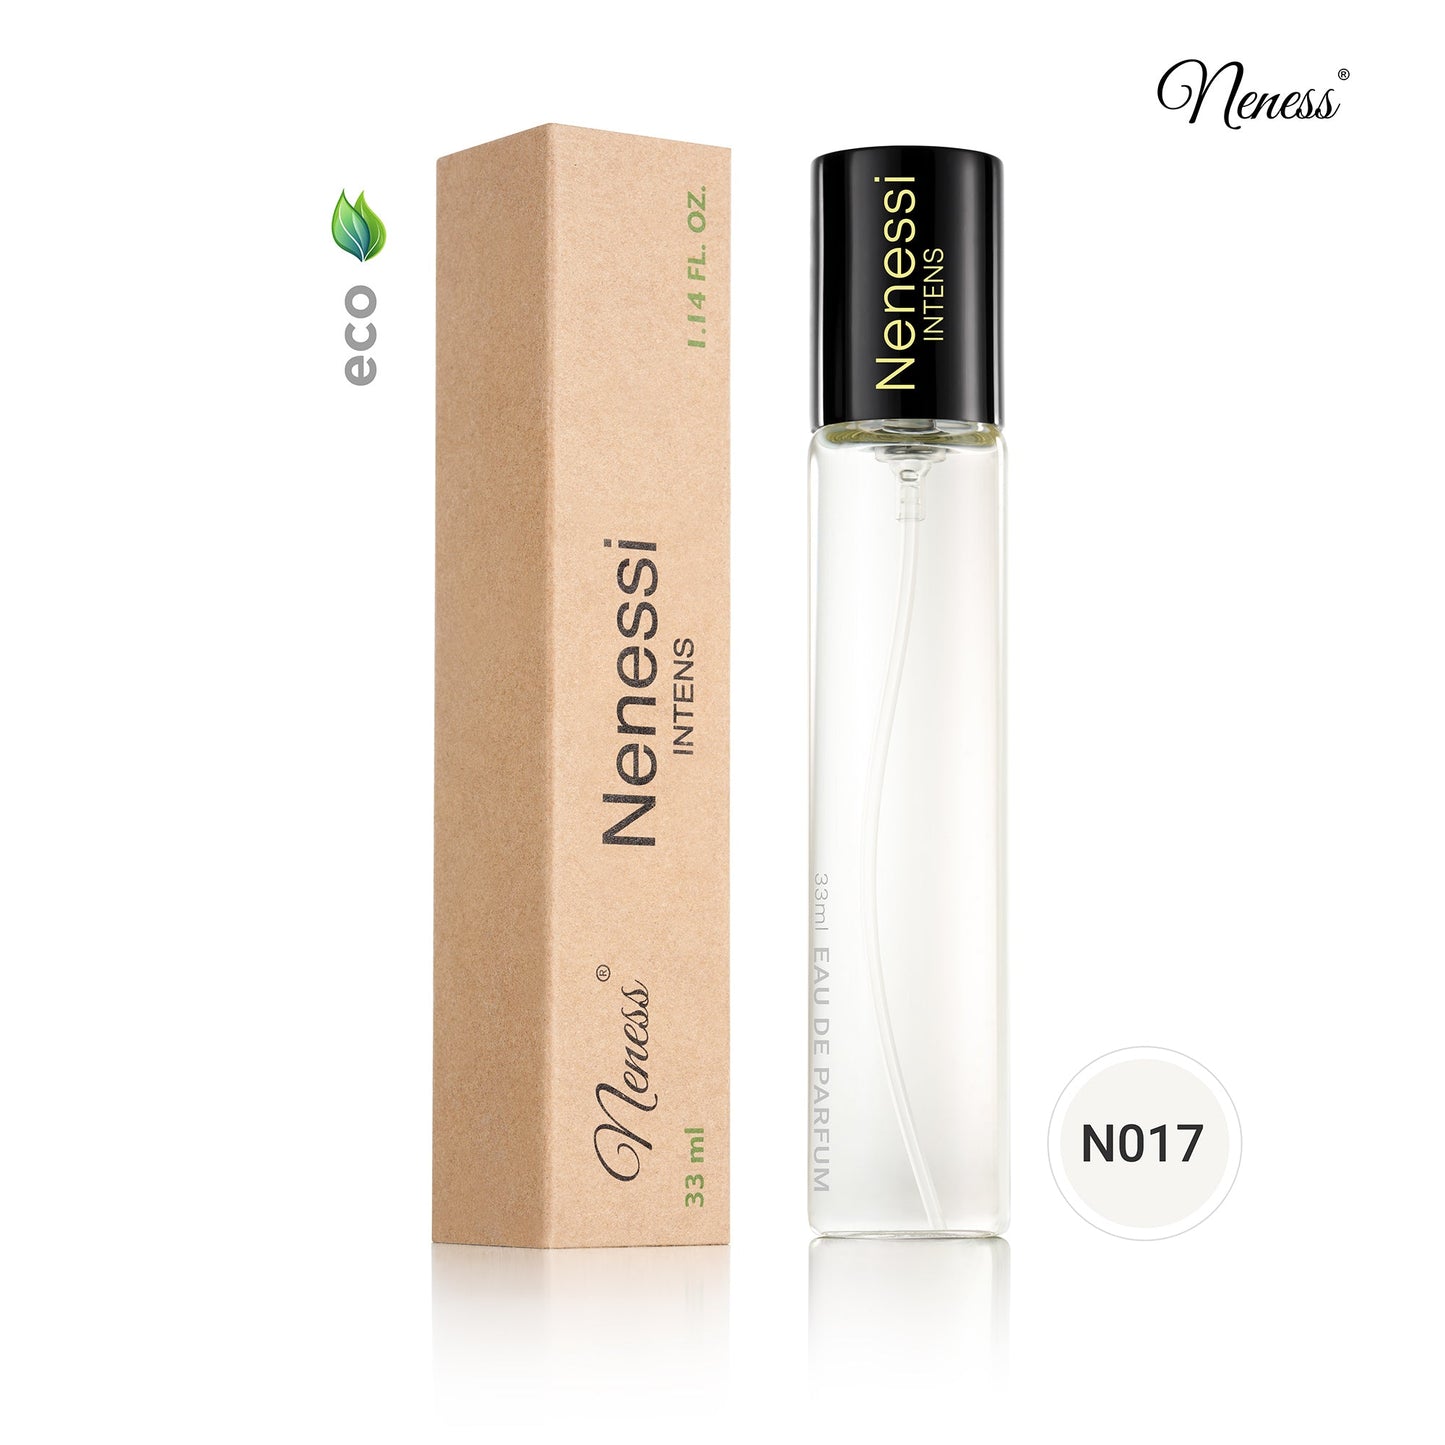 N017. Nenessi Intens - 33 ml - Parfum voor vrouwen